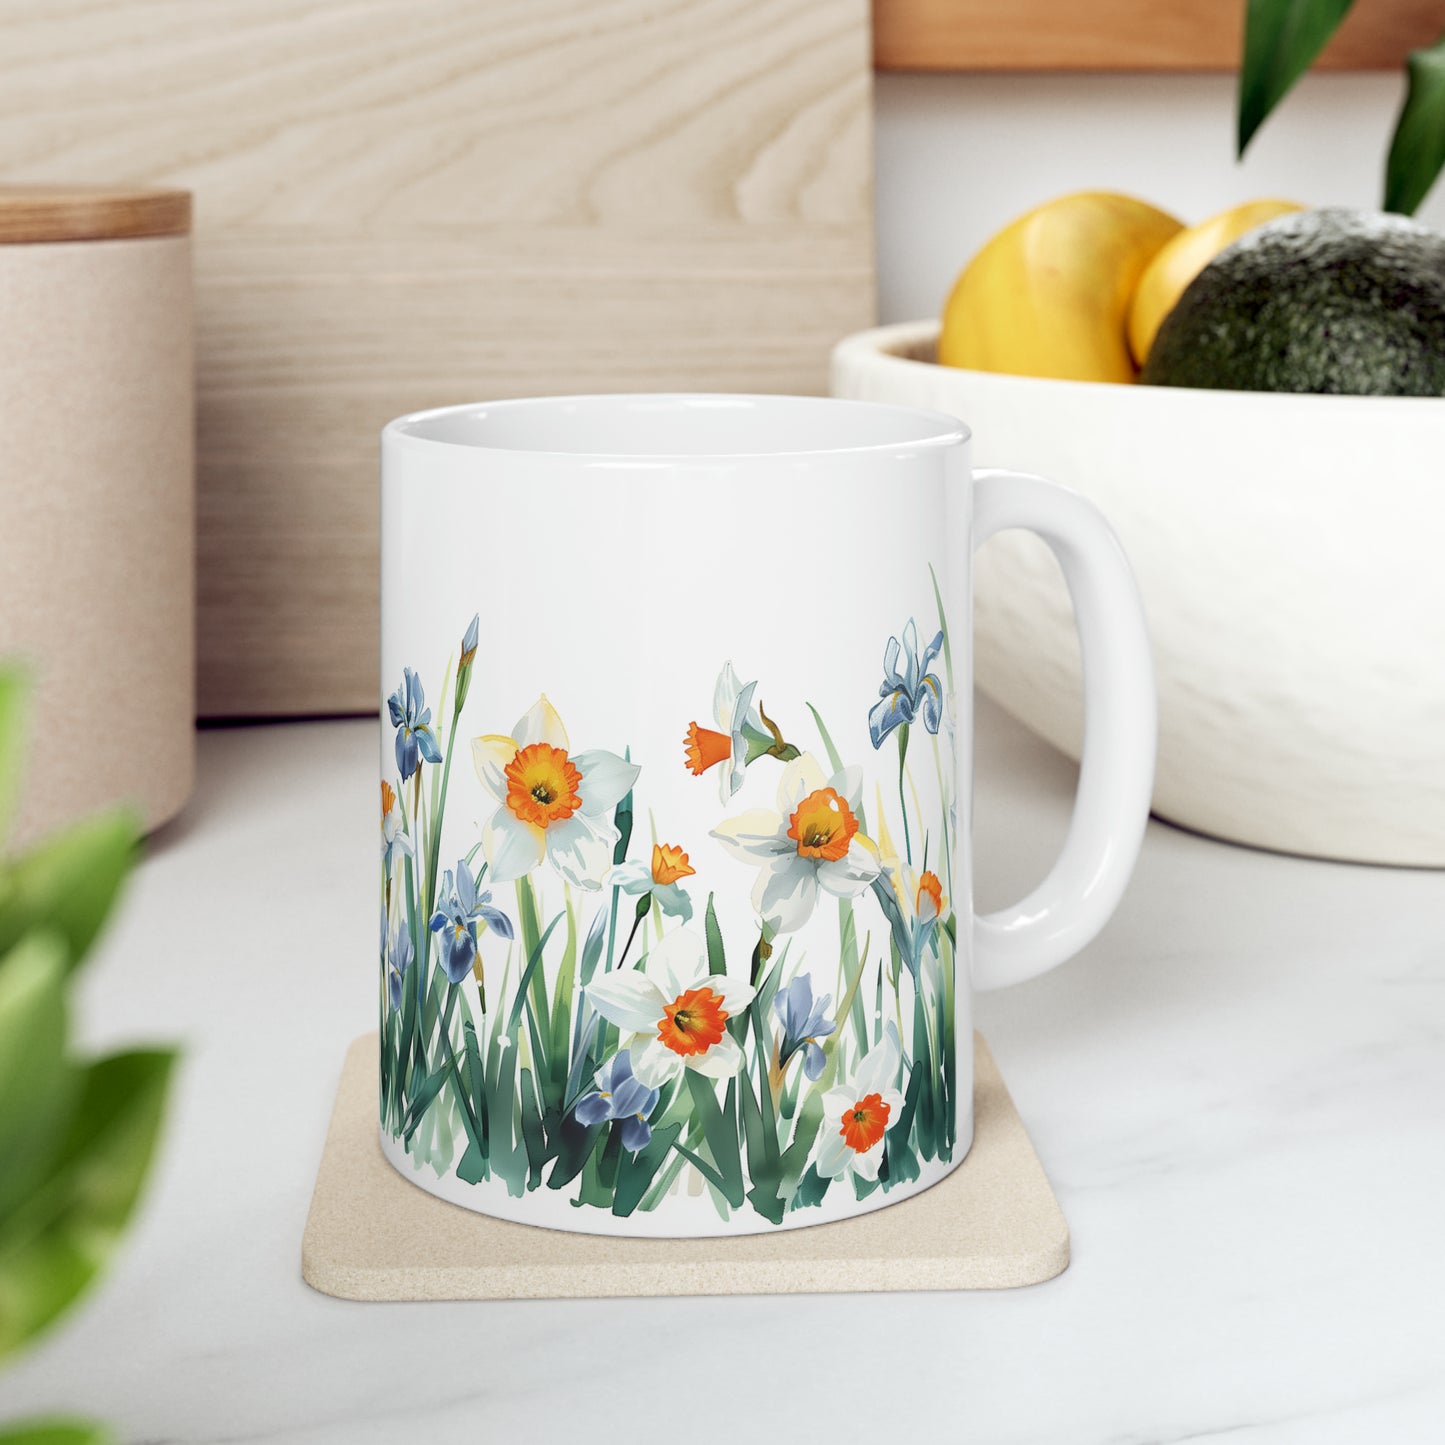 Daffodils and Irises, Ceramic Mug - 11 oz, Watercolor